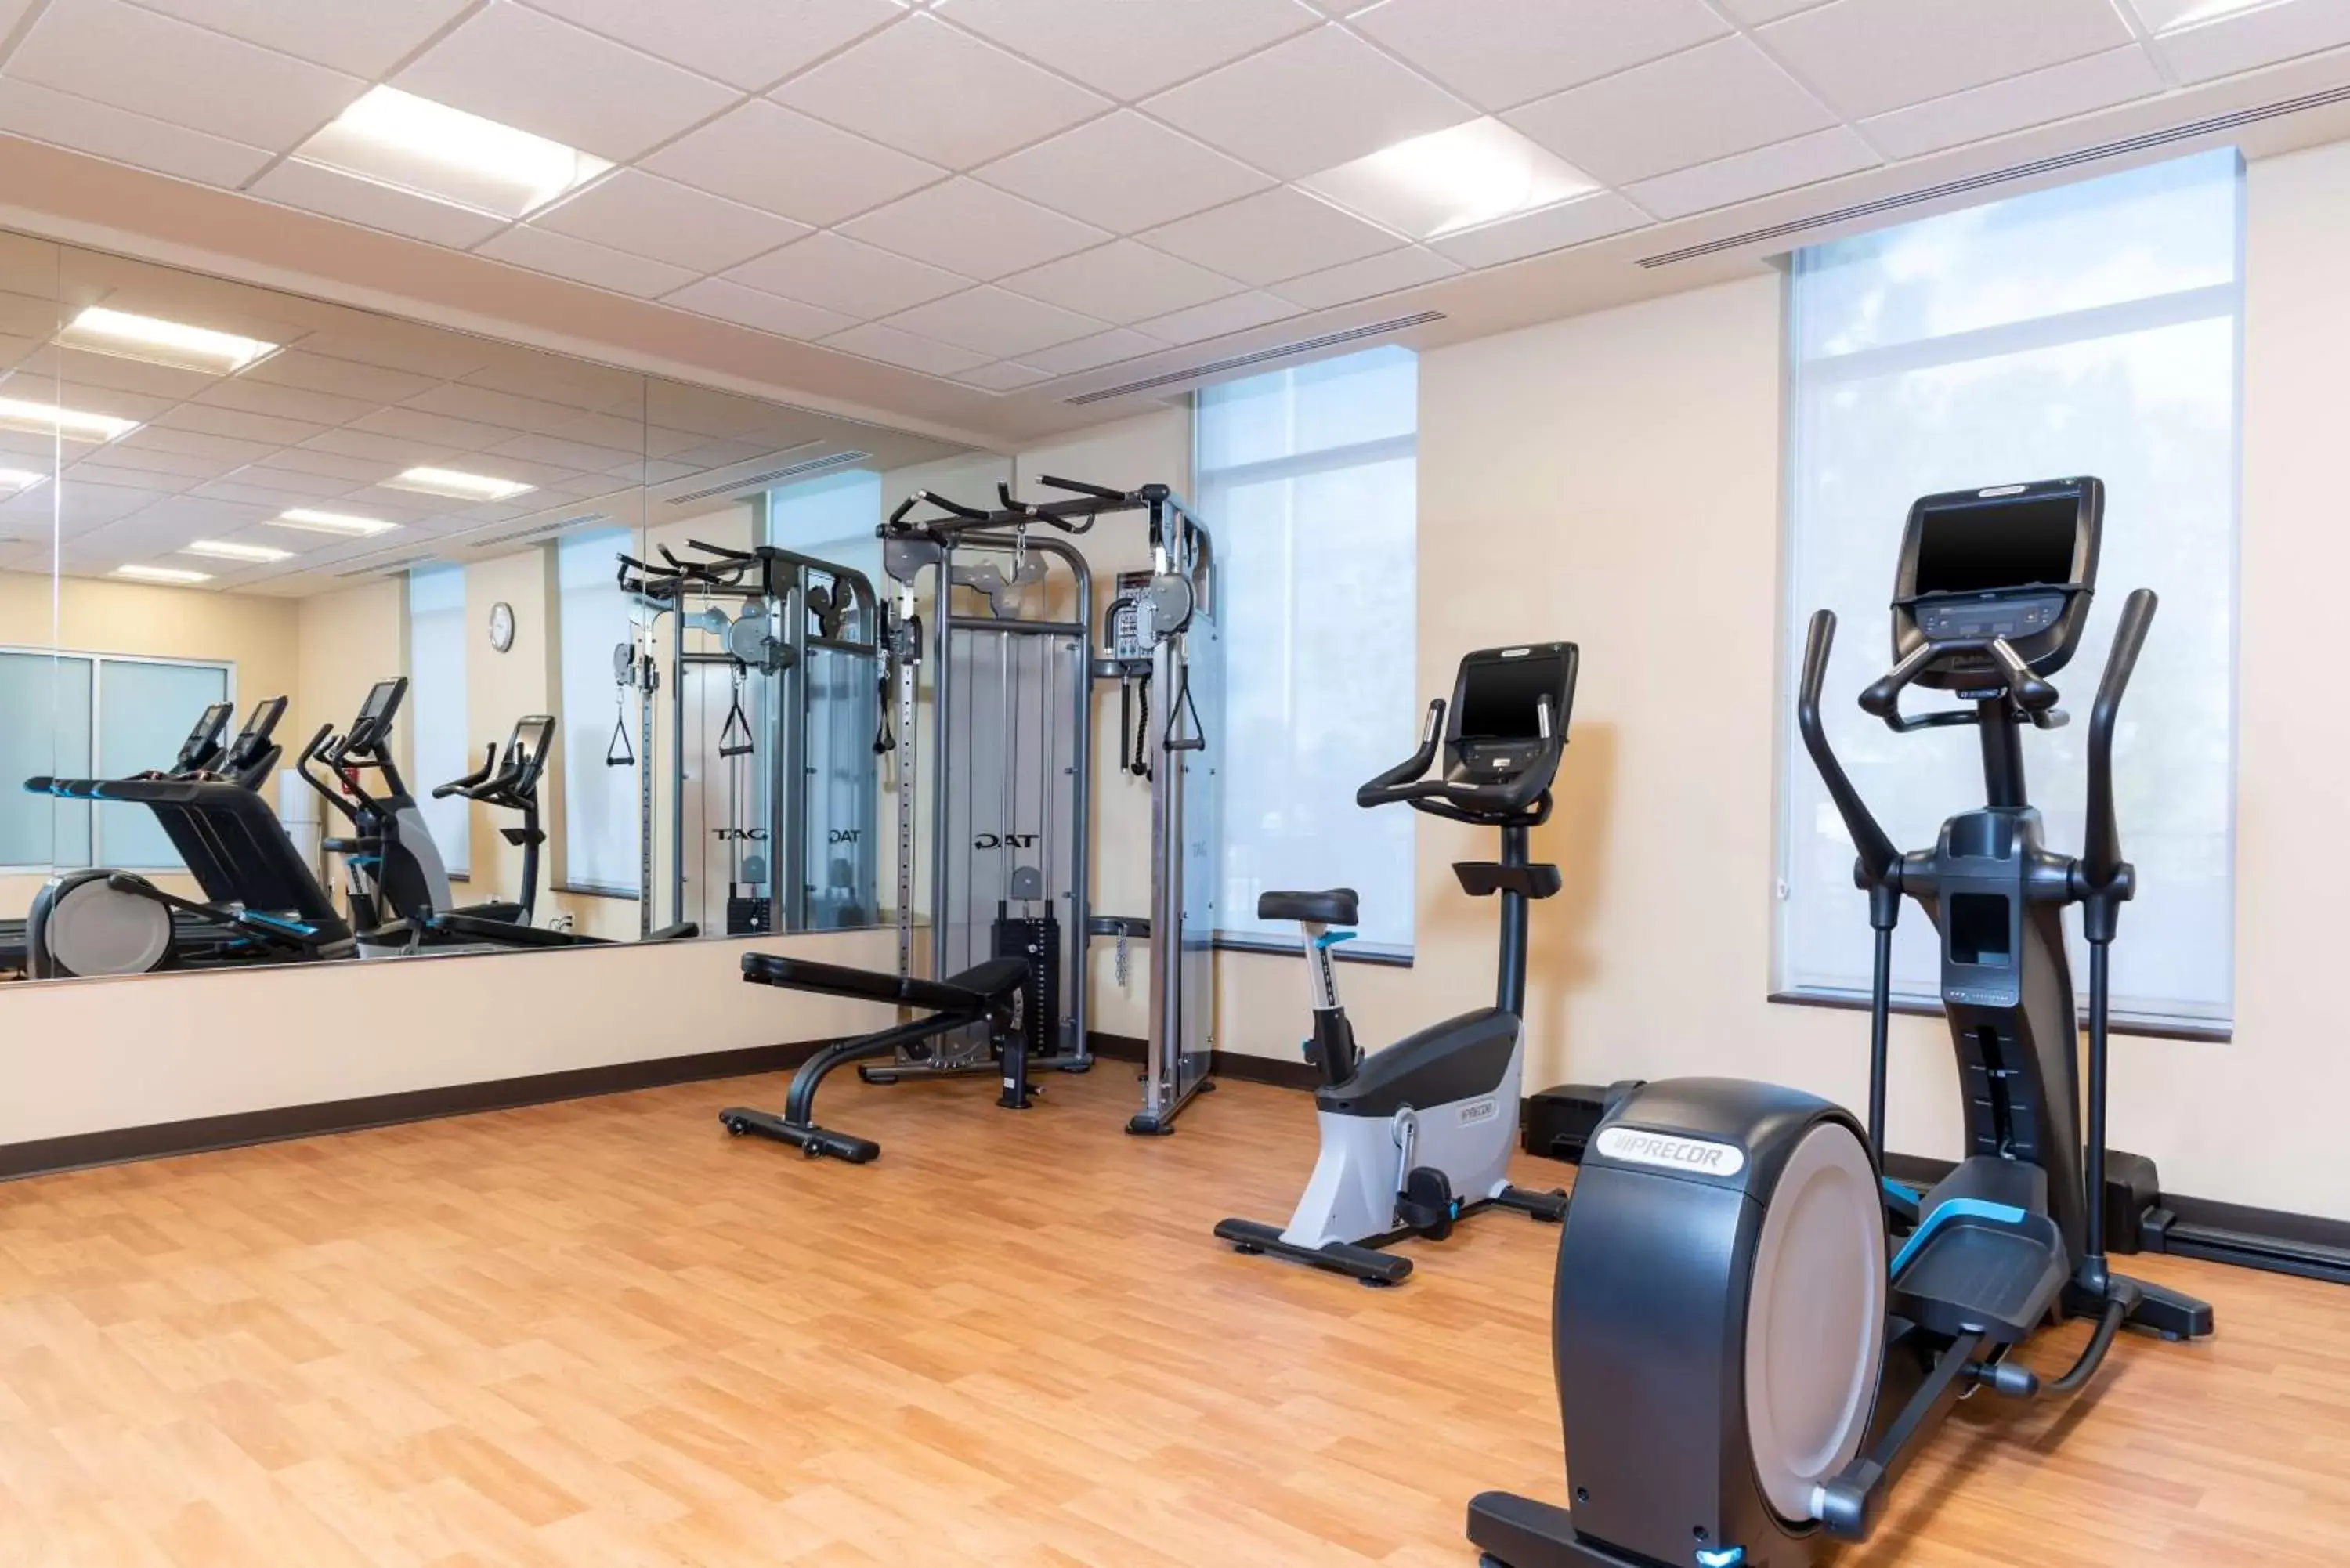 Fitness centre/facilities, Fitness Center/Facilities in Hyatt Place Flint/Grand Blanc